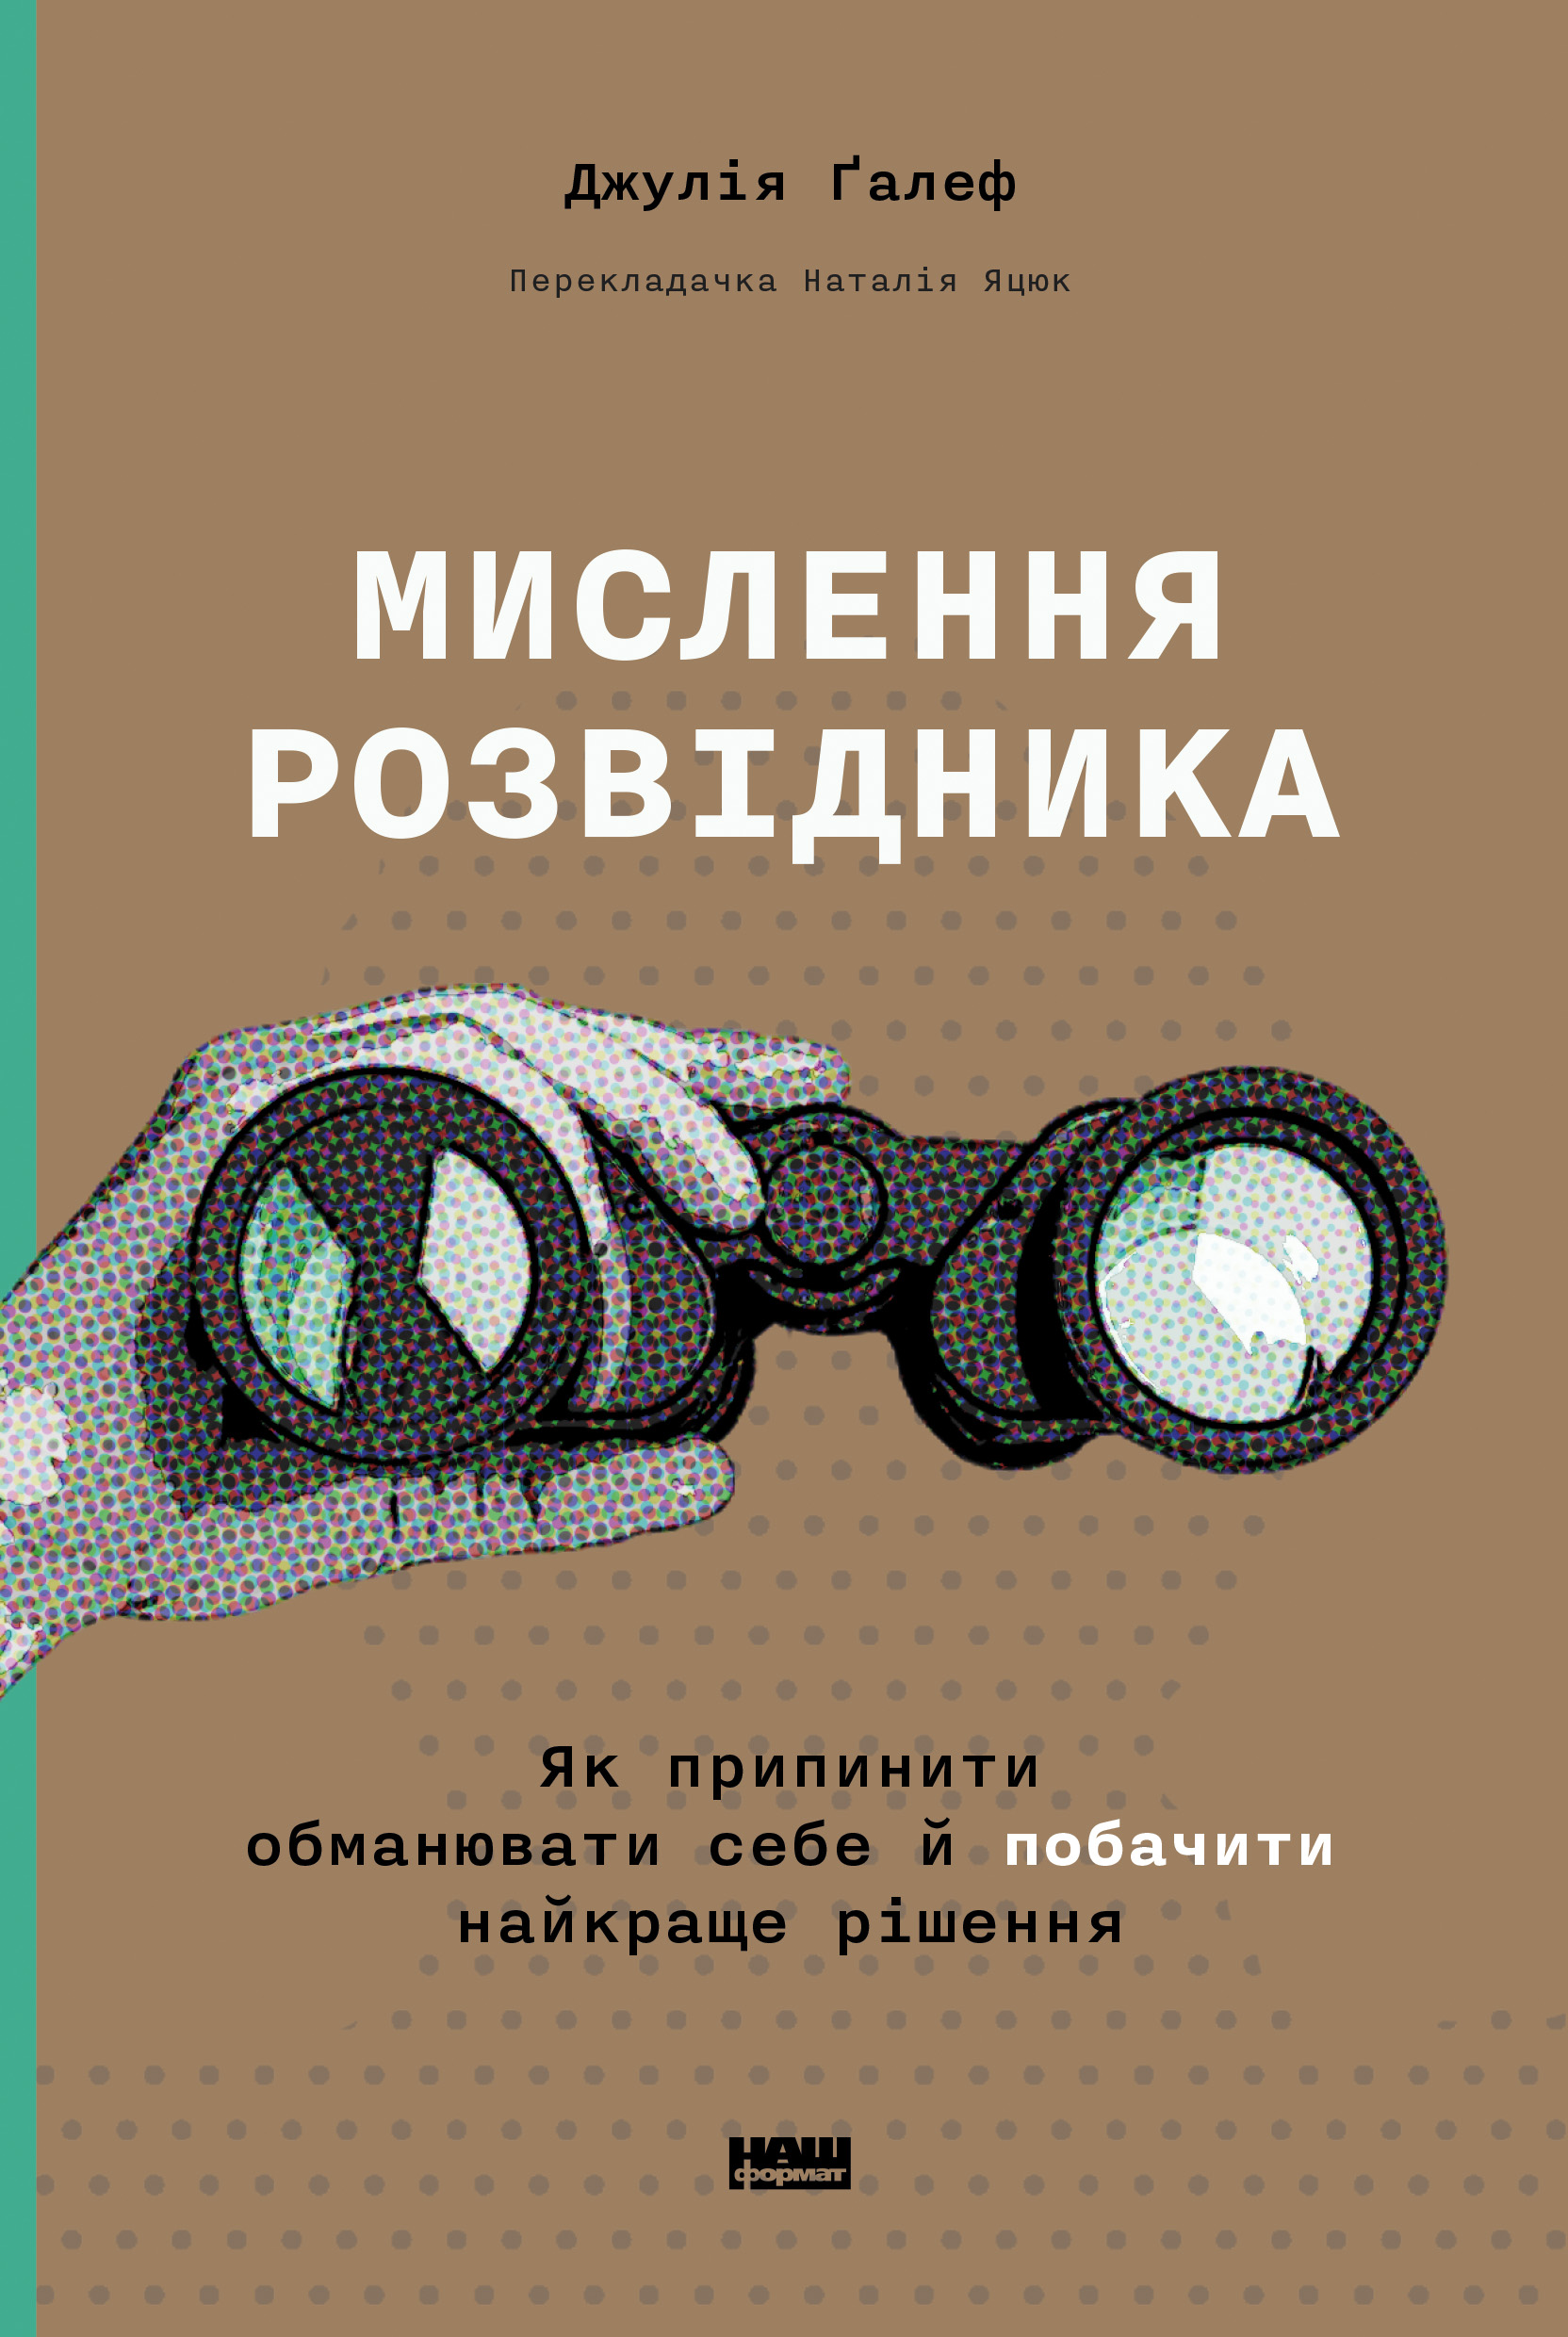 Що почитати у серпні. 56 нових книжок від українських видавництв